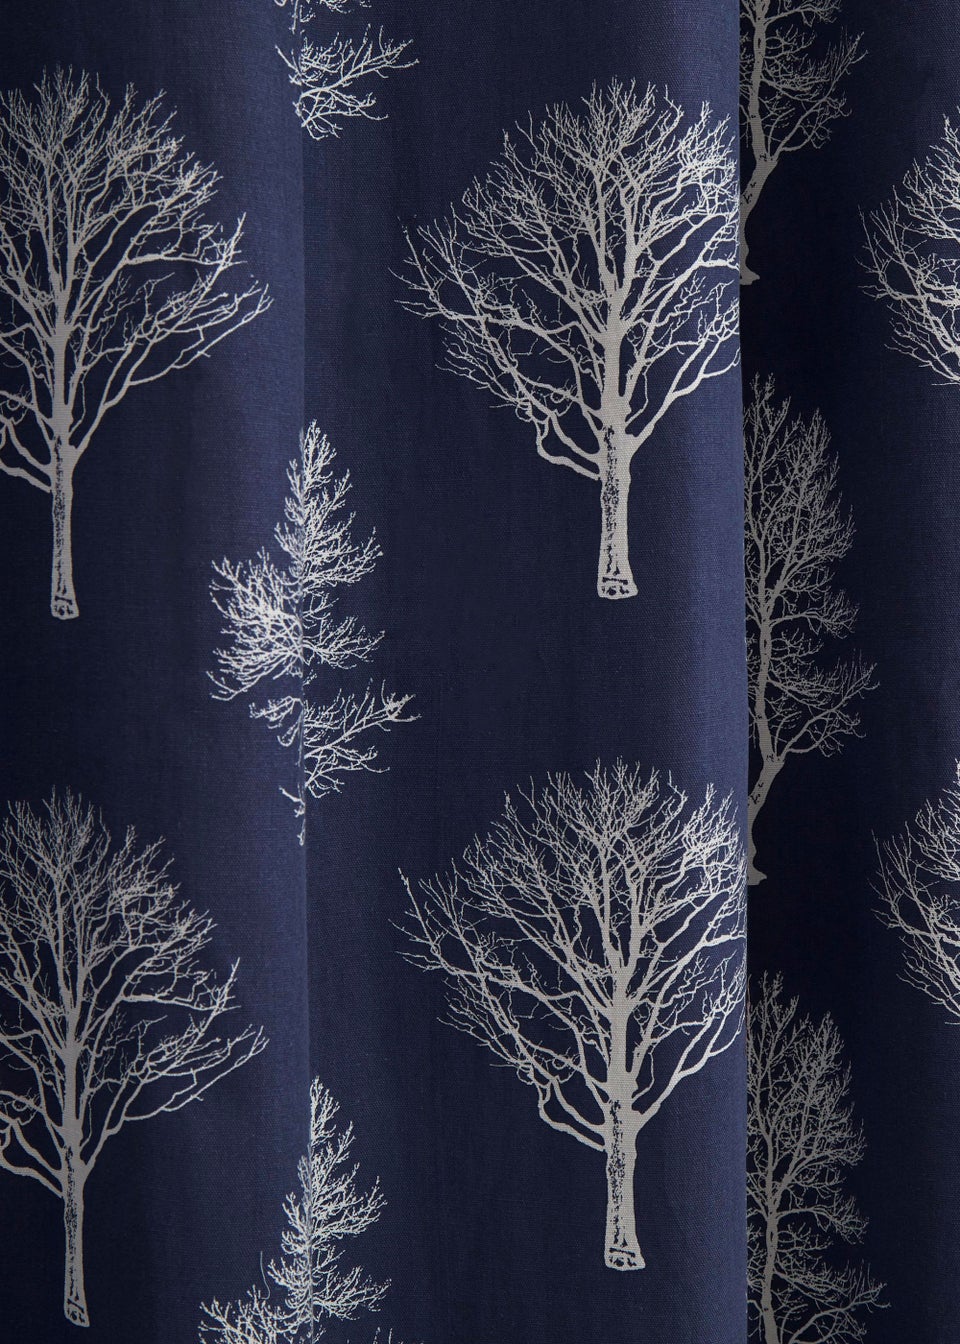 Fusion Woodland Trees Eyelet Curtains